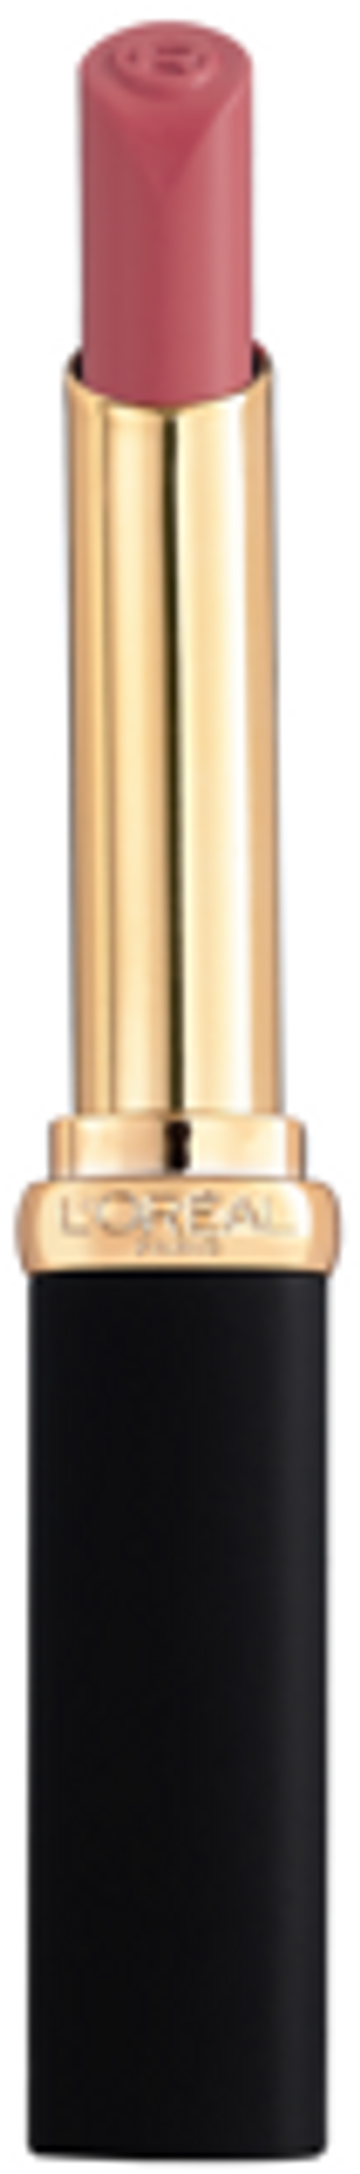 L'Oréal Paris Color Riche Intense Volume Matte matowa pomadka do ust 602